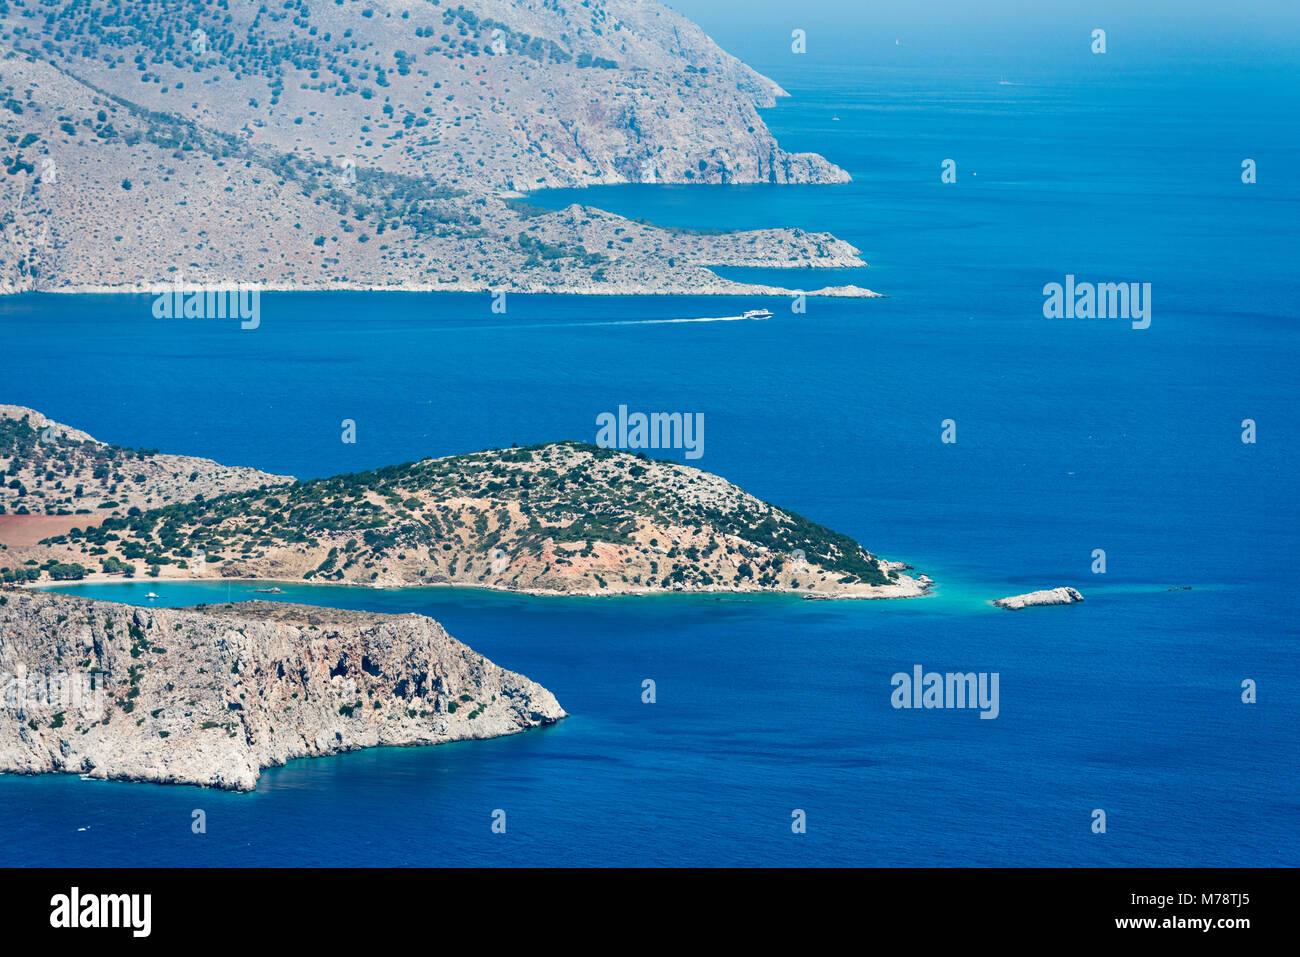 Immagine aerea del Dodecaneso orientale delle isole greche Koulondros, Seskli e Xisos nel Mare Mediterraneo Foto Stock